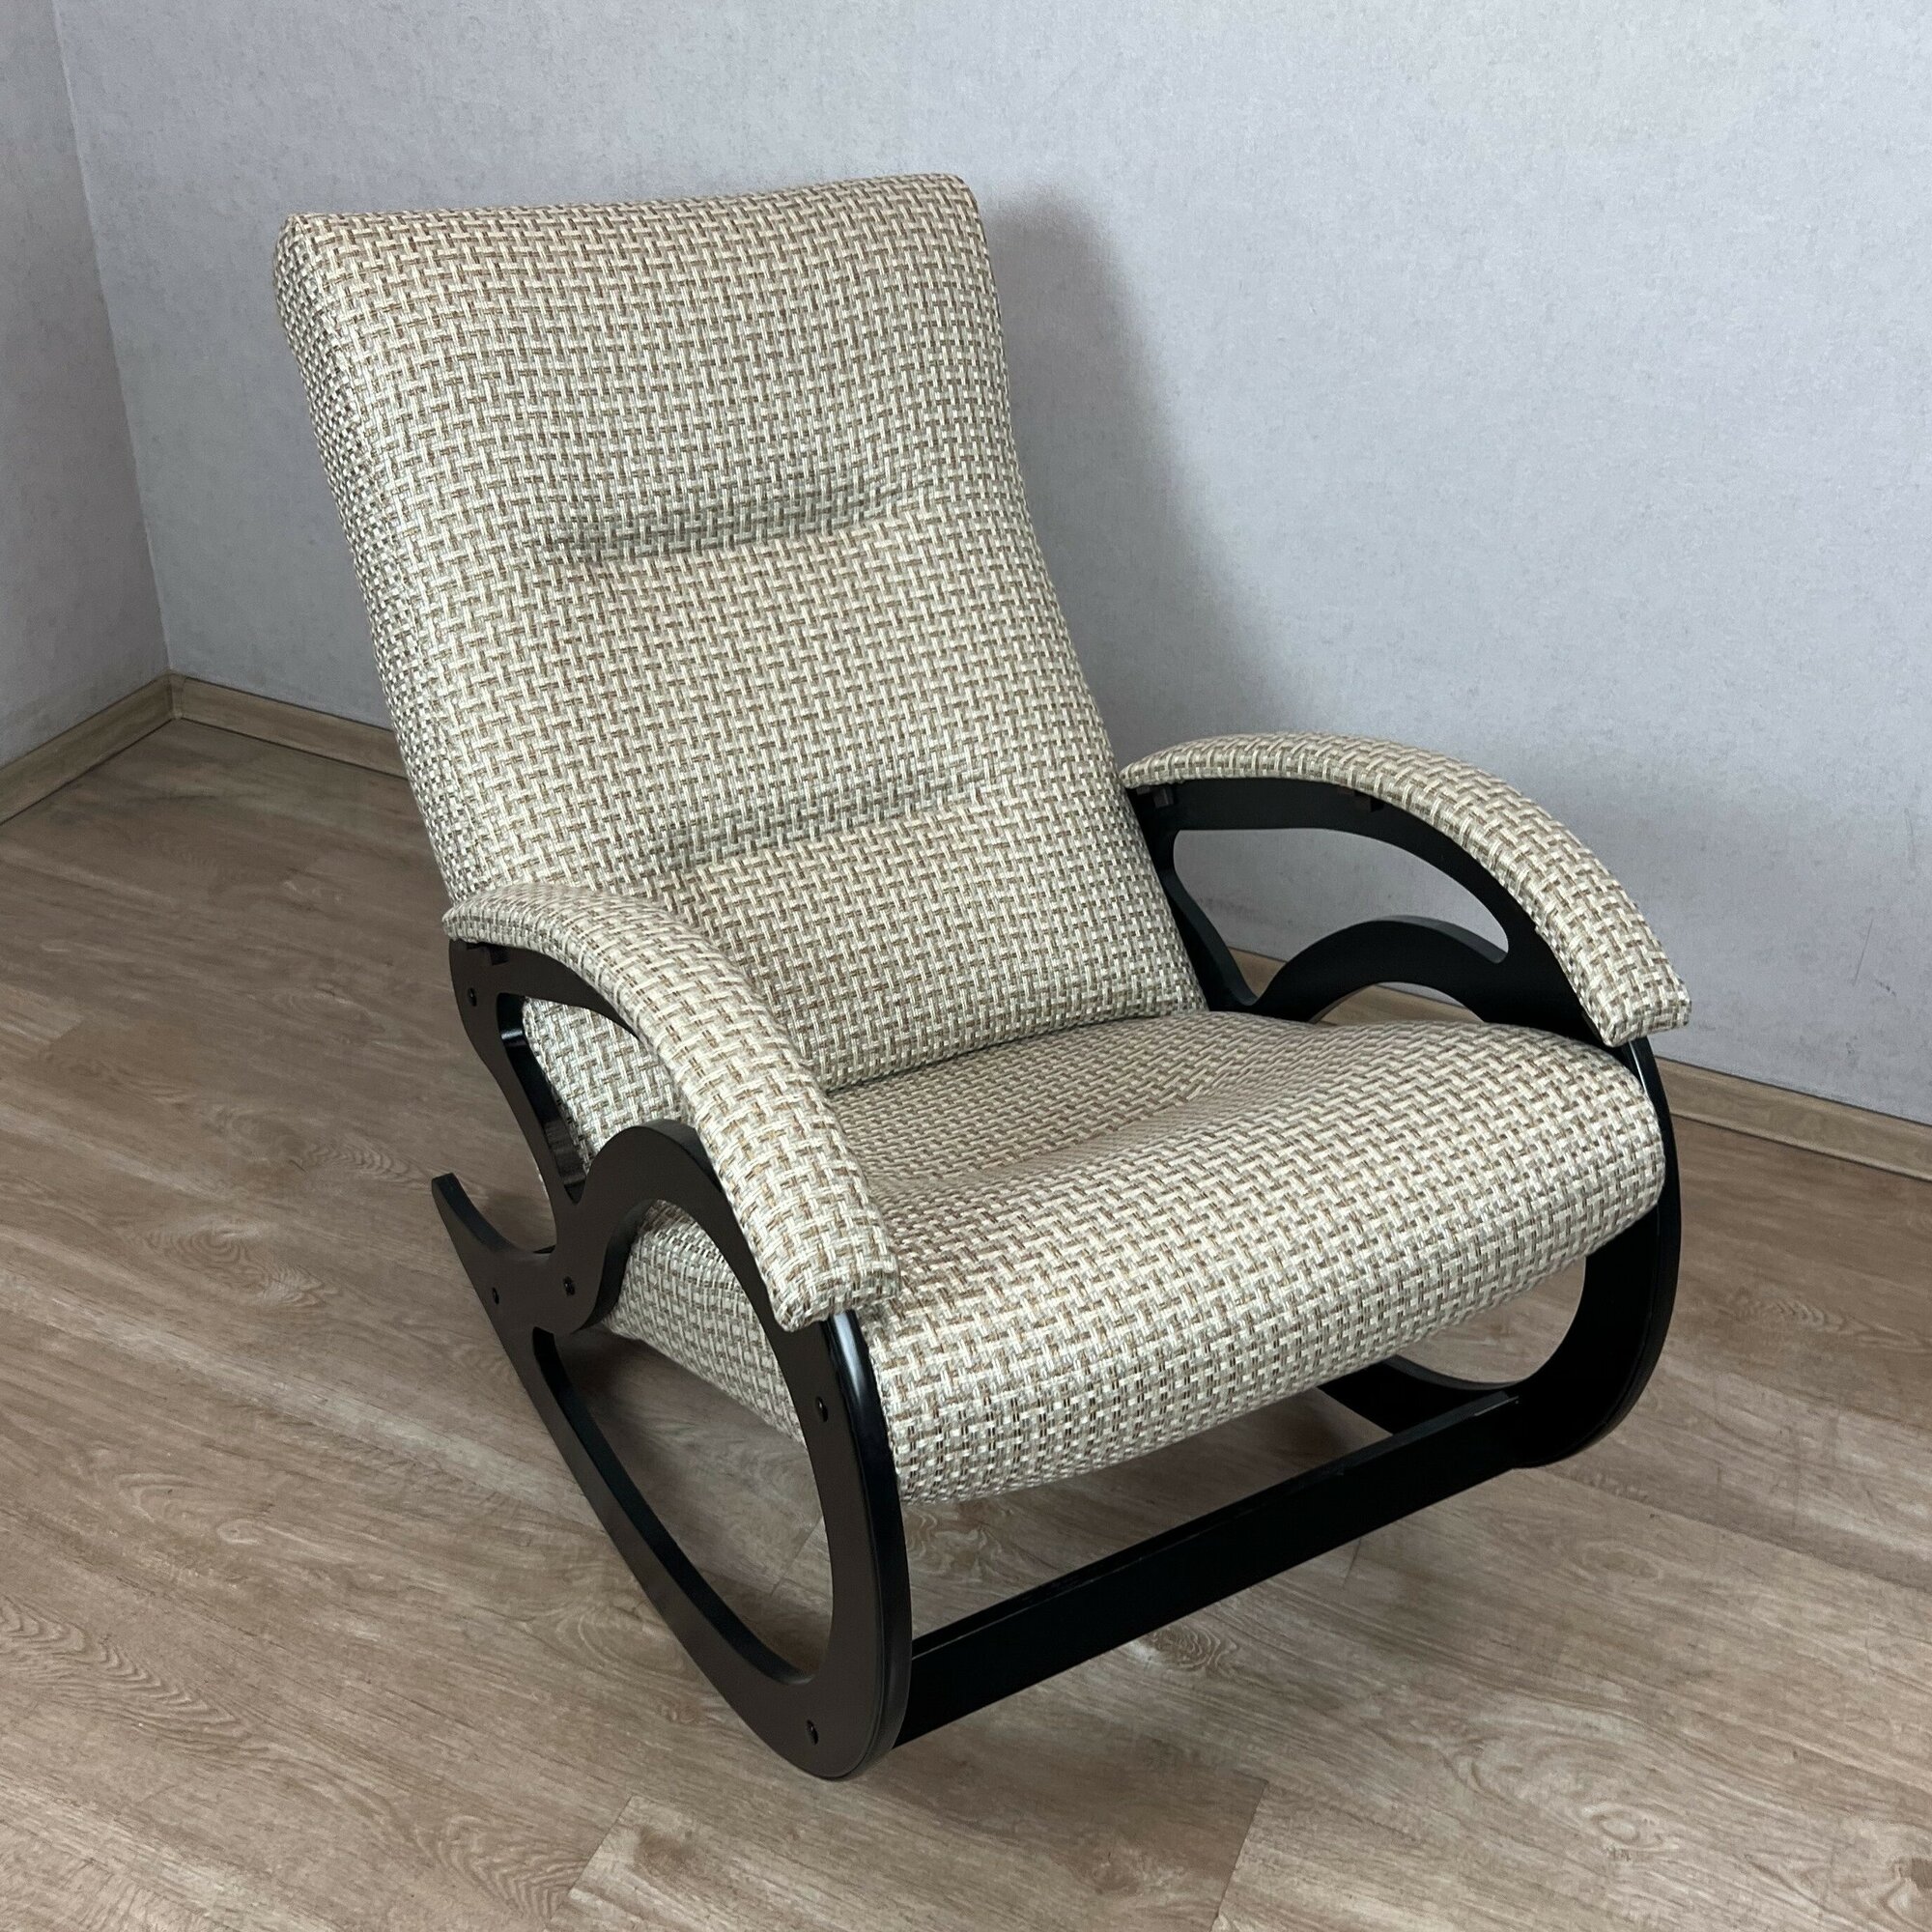 Кресло-качалка классическое для дома и дачи, обивка из рогожки, цвет бежевый